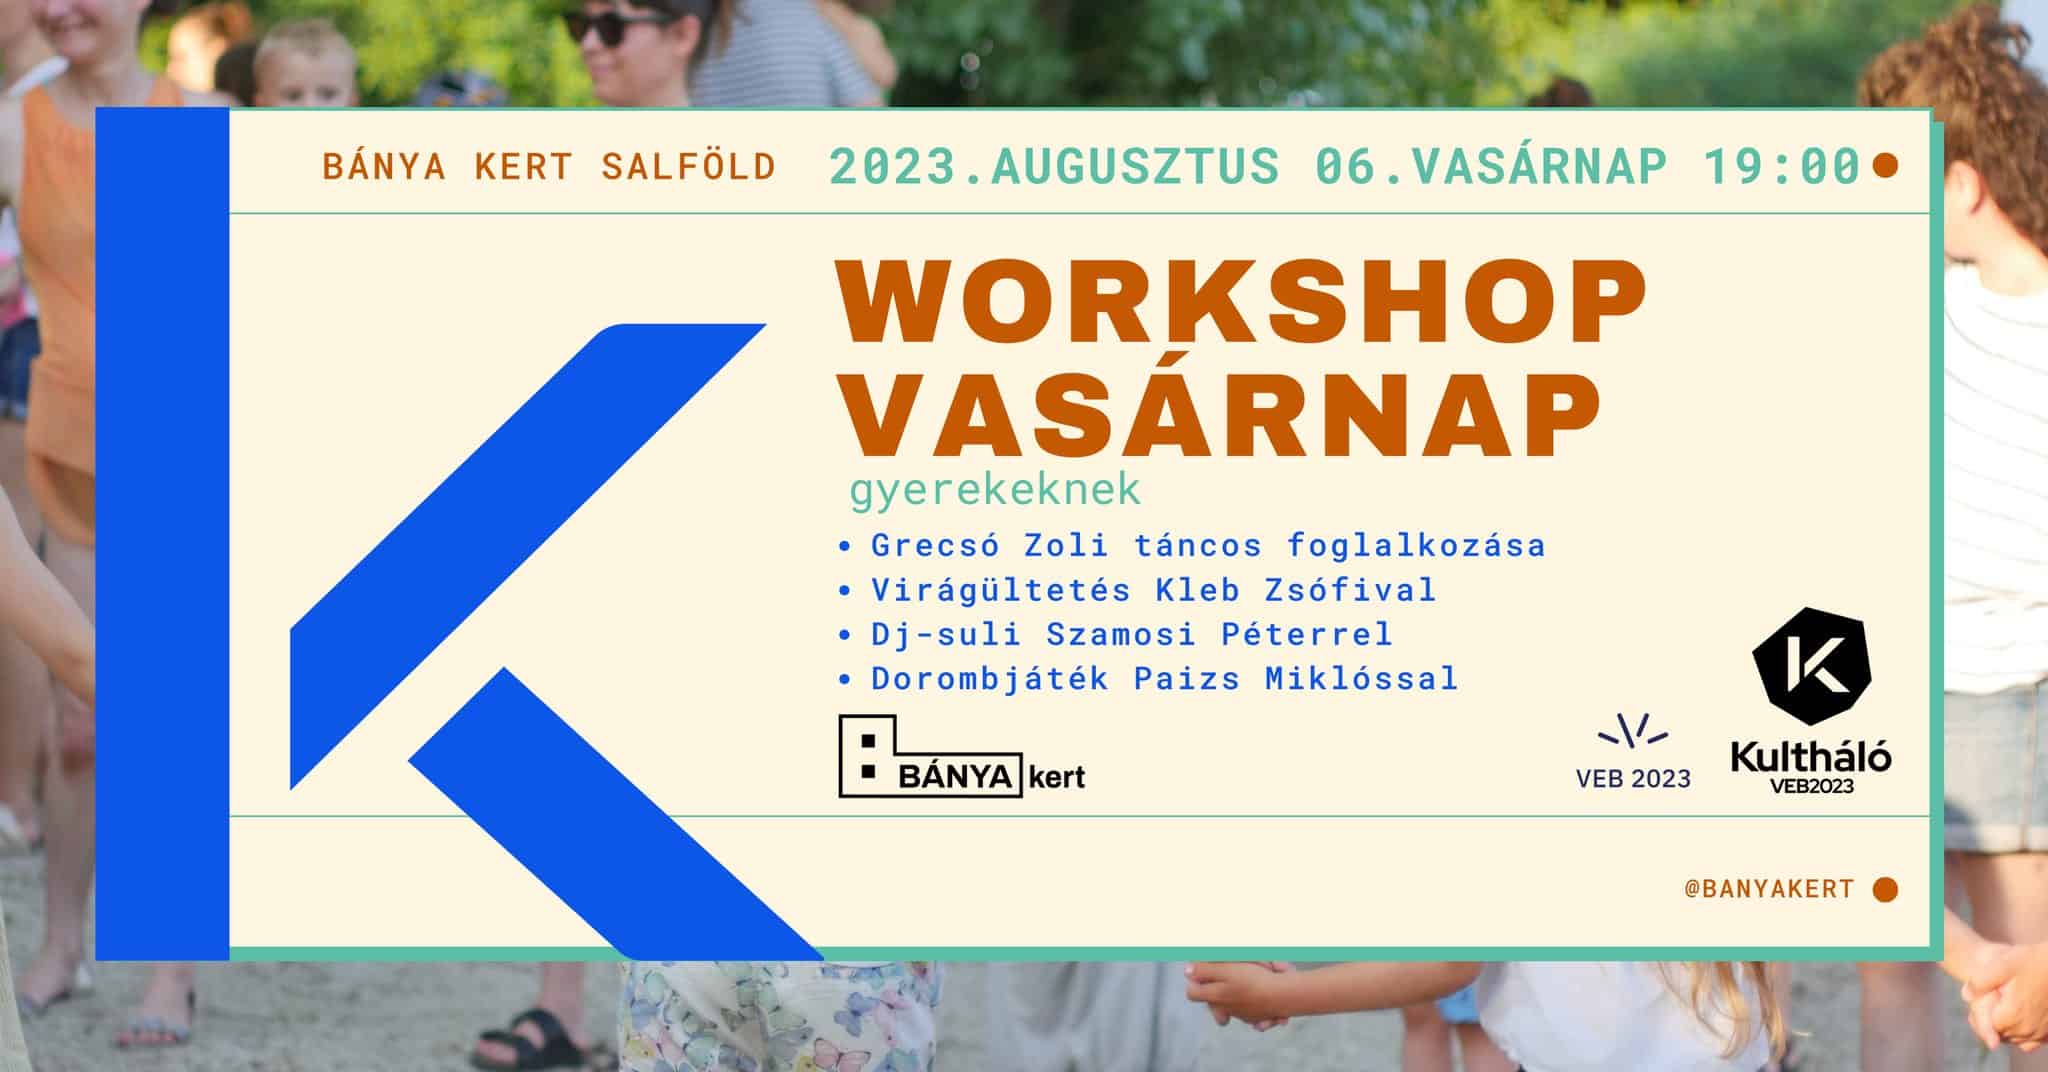 Workshop Vasárnap gyerekeknek / / Kultháló VEB2023 program BÁNYA KERT